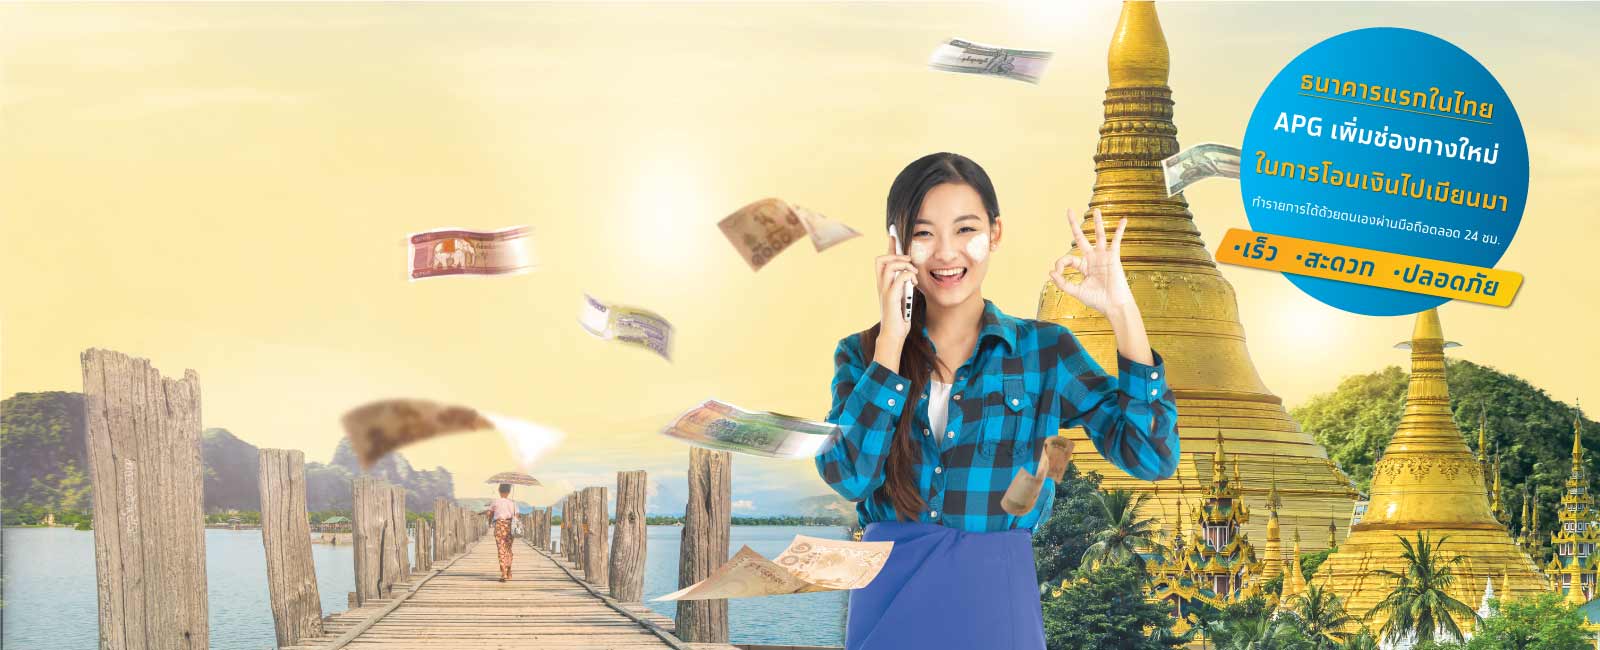 บริการโอนเงินไปประเทศพม่า (Money Transfer to Myanmar) desktop